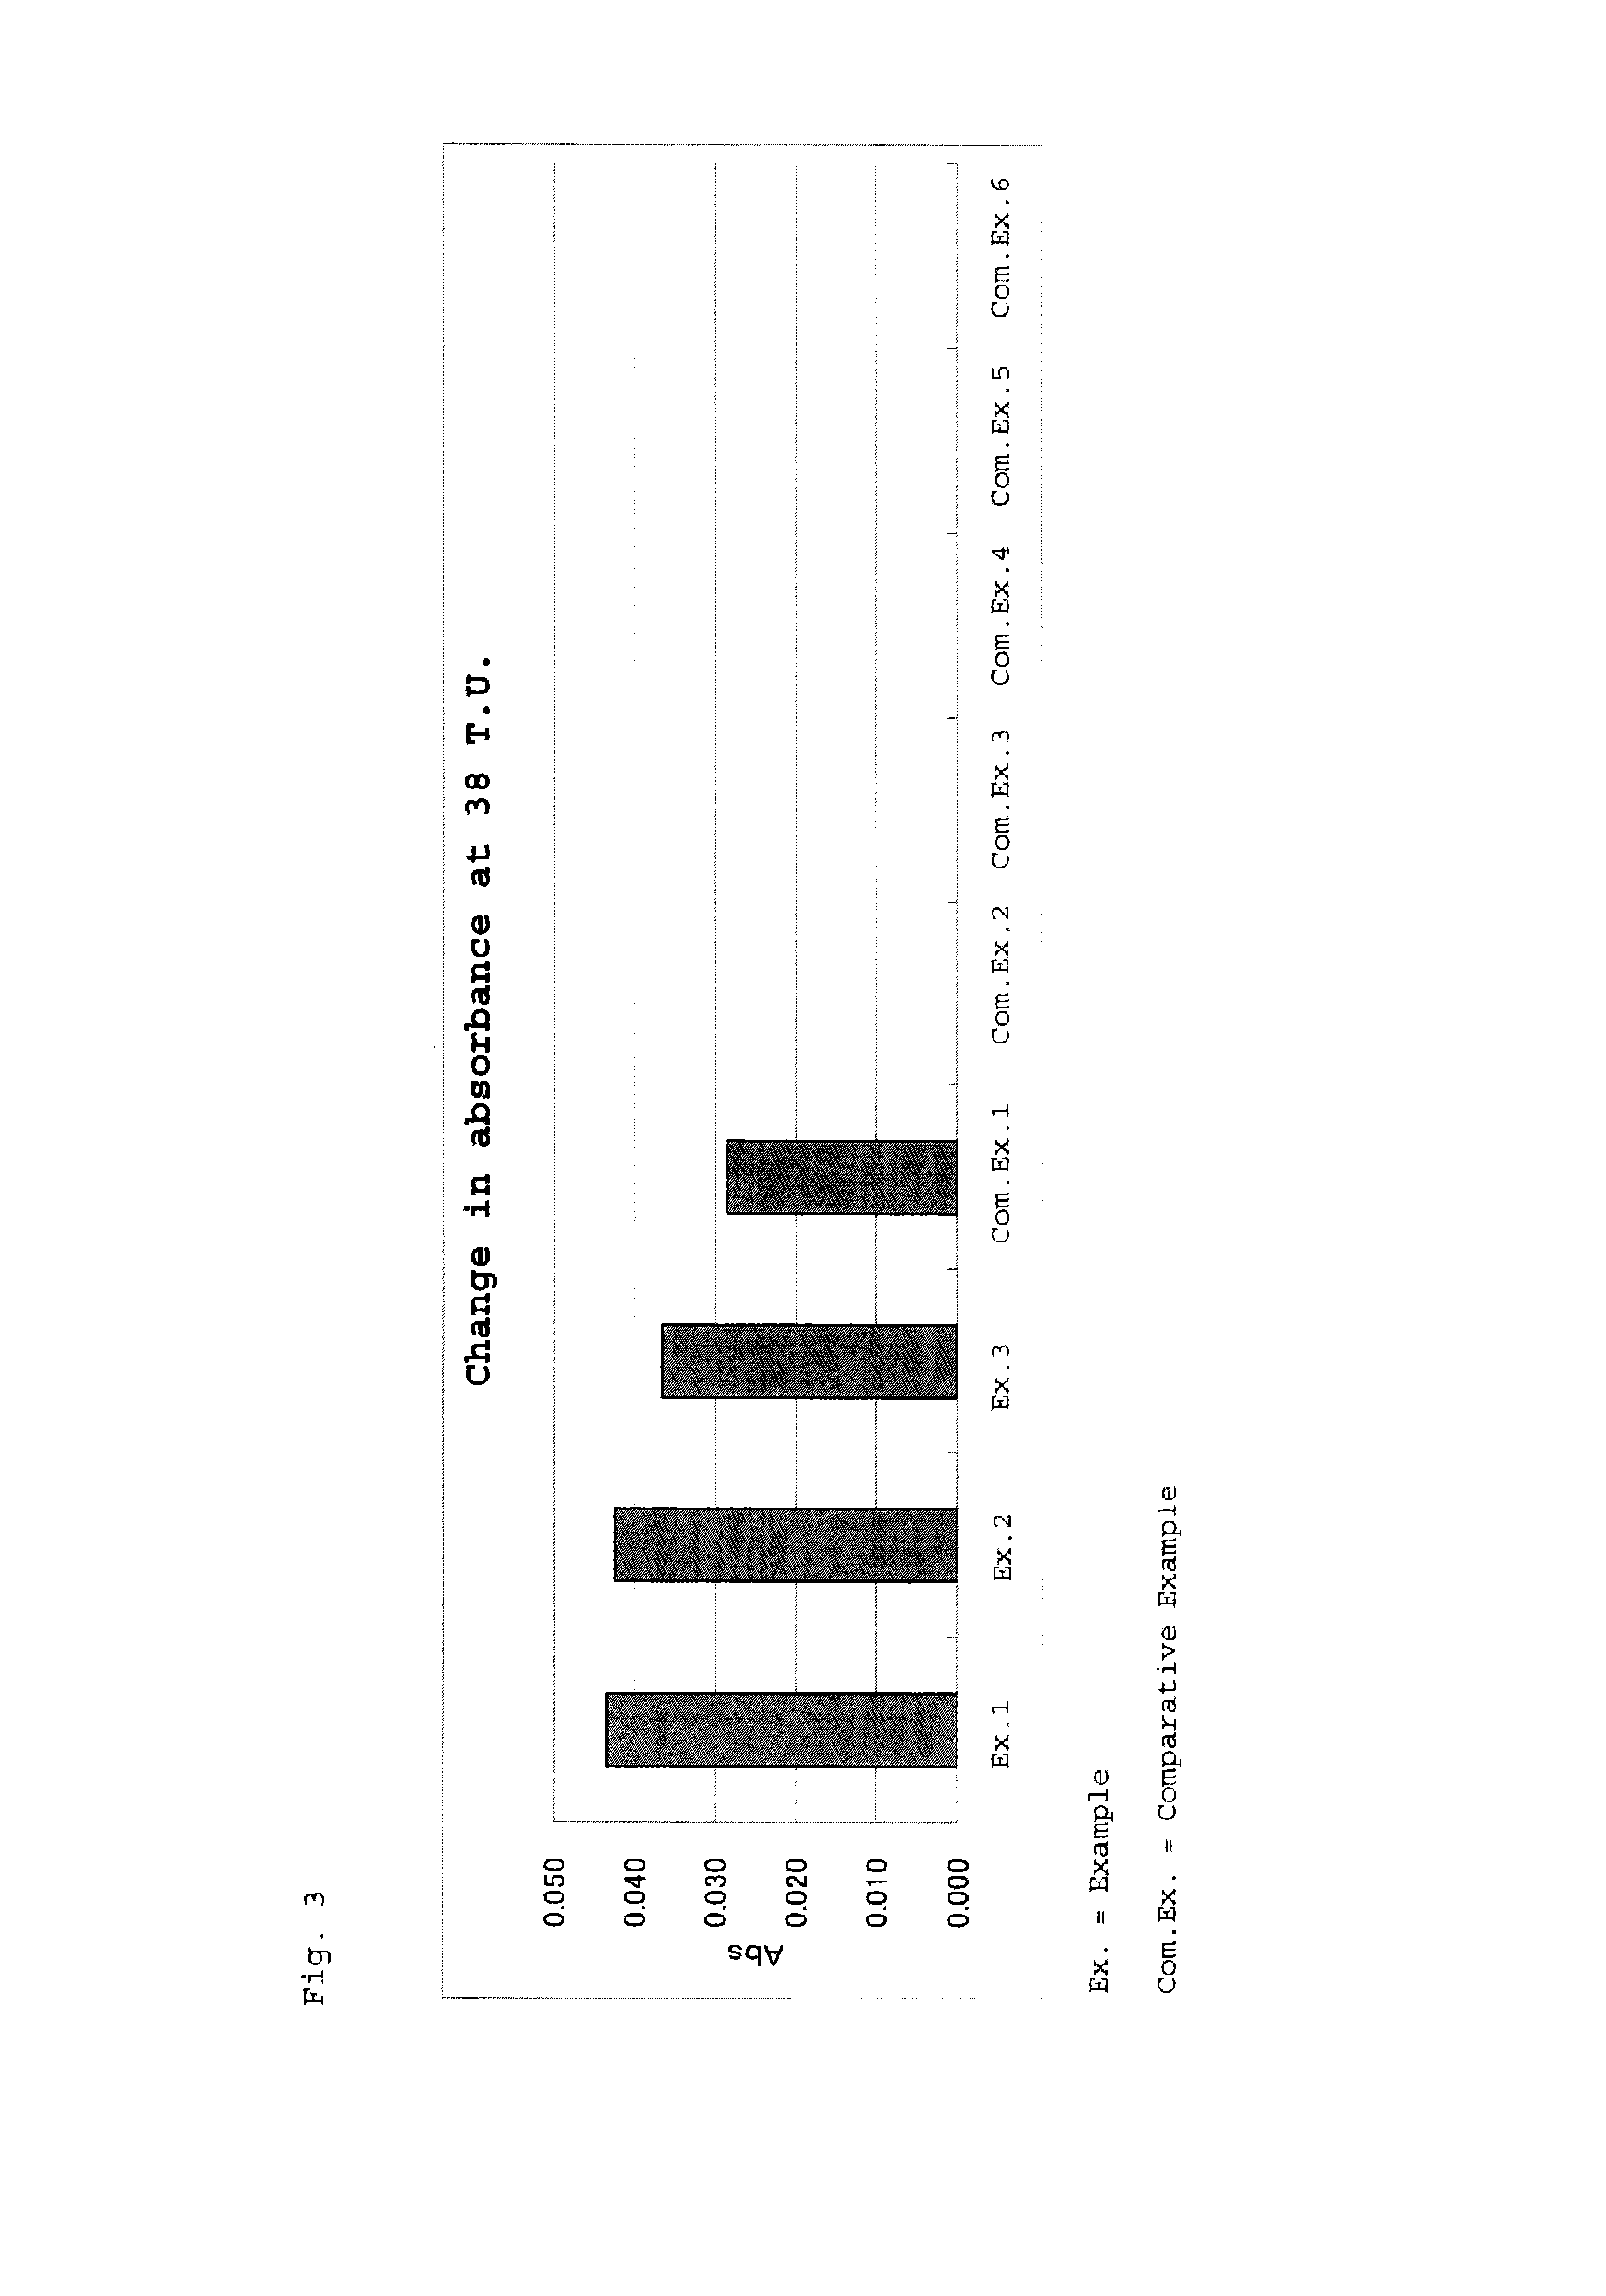 Reagent for assaying anti-treponema pallidum antibody